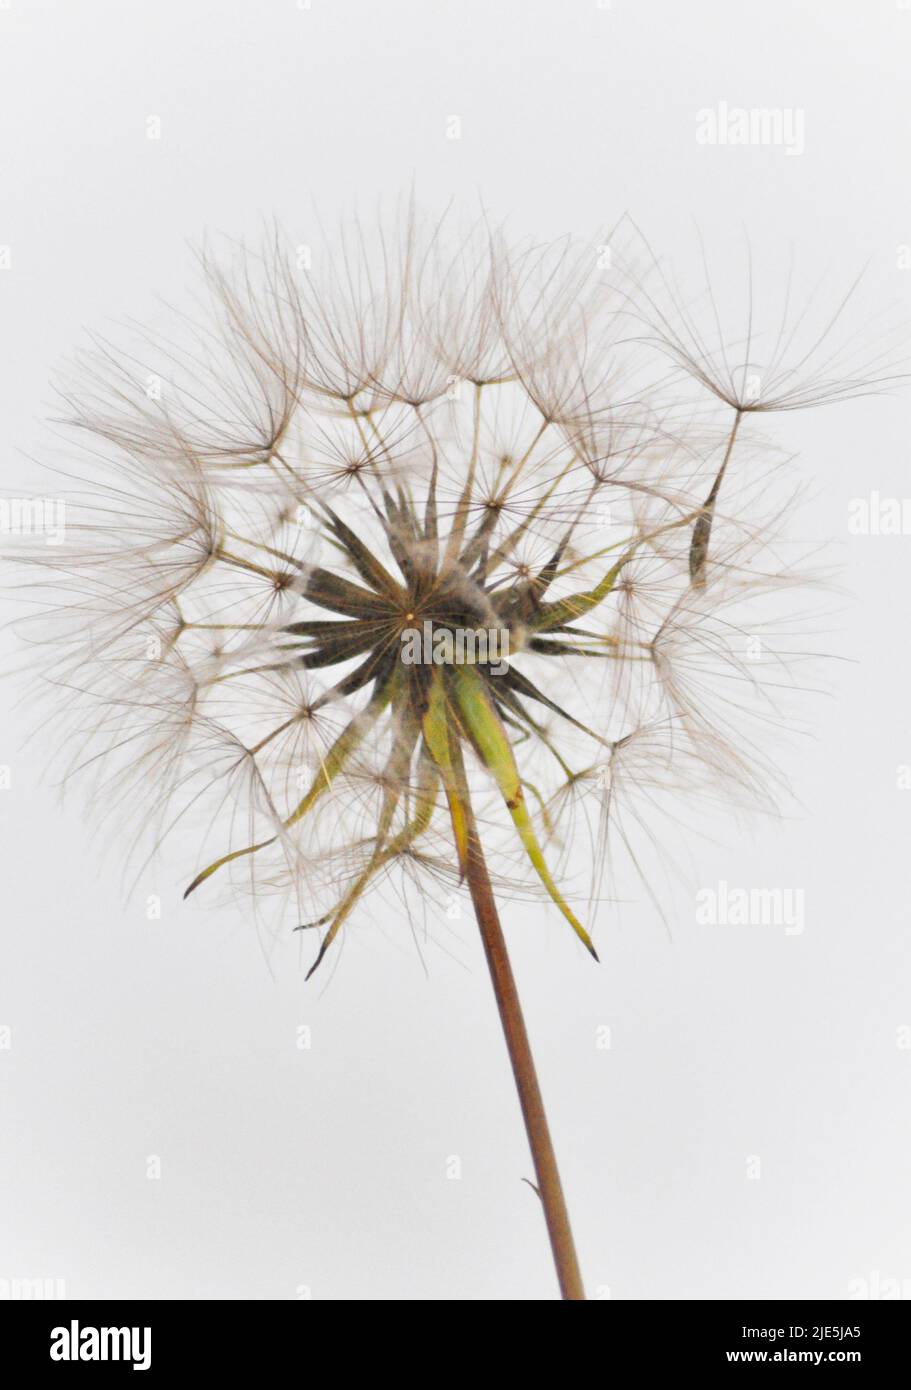 Eine einzelne Dommelionsuhr, die auf einem weißen Hintergrund steht, wobei ein Samen von der Uhr wegkommt Stockfoto